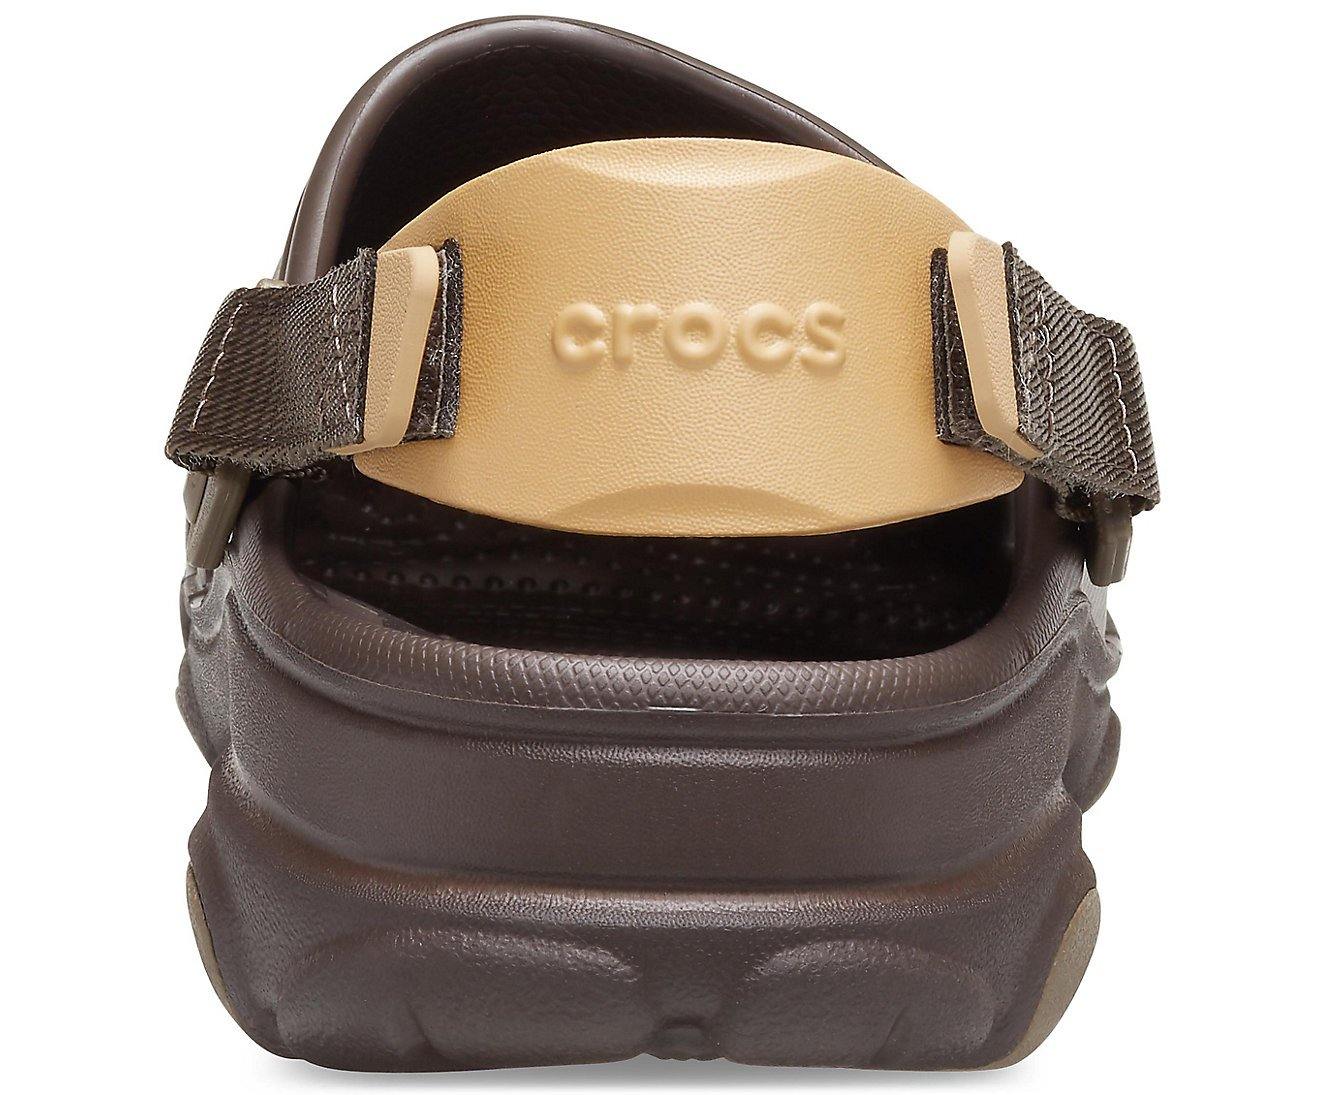 Authentic Crocs Classic All-Terrain Clog - Espresso – mStore.Kh ...